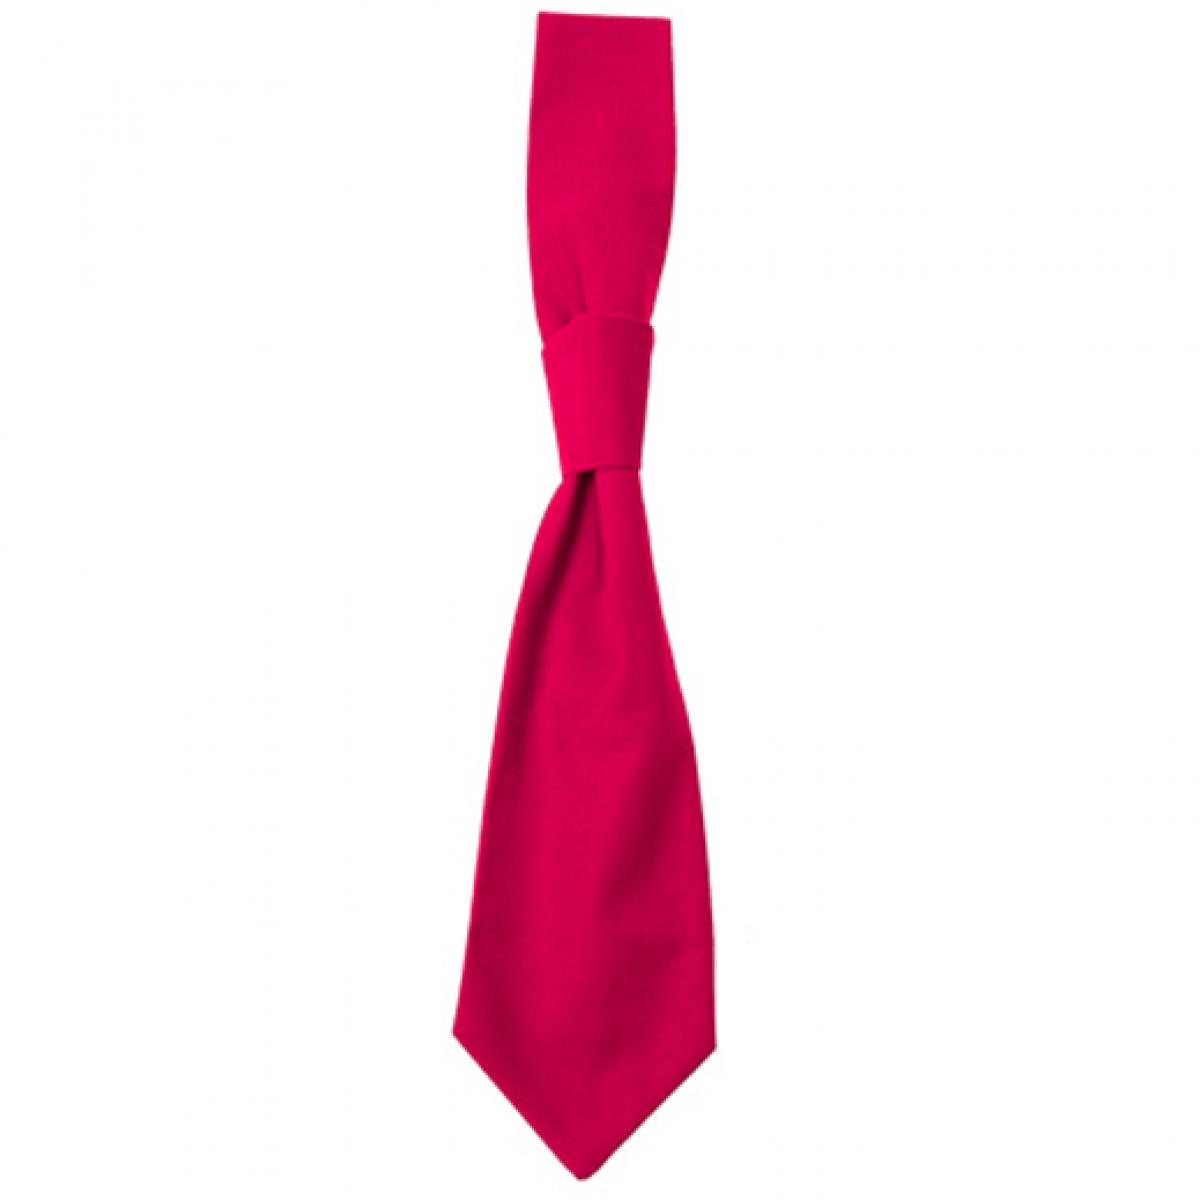 Hersteller: CG Workwear Herstellernummer: 01360-01 Artikelbezeichnung: Krawatte Messina / Zertifiziert nach Oeko-Tex 100 Farbe: Magenta